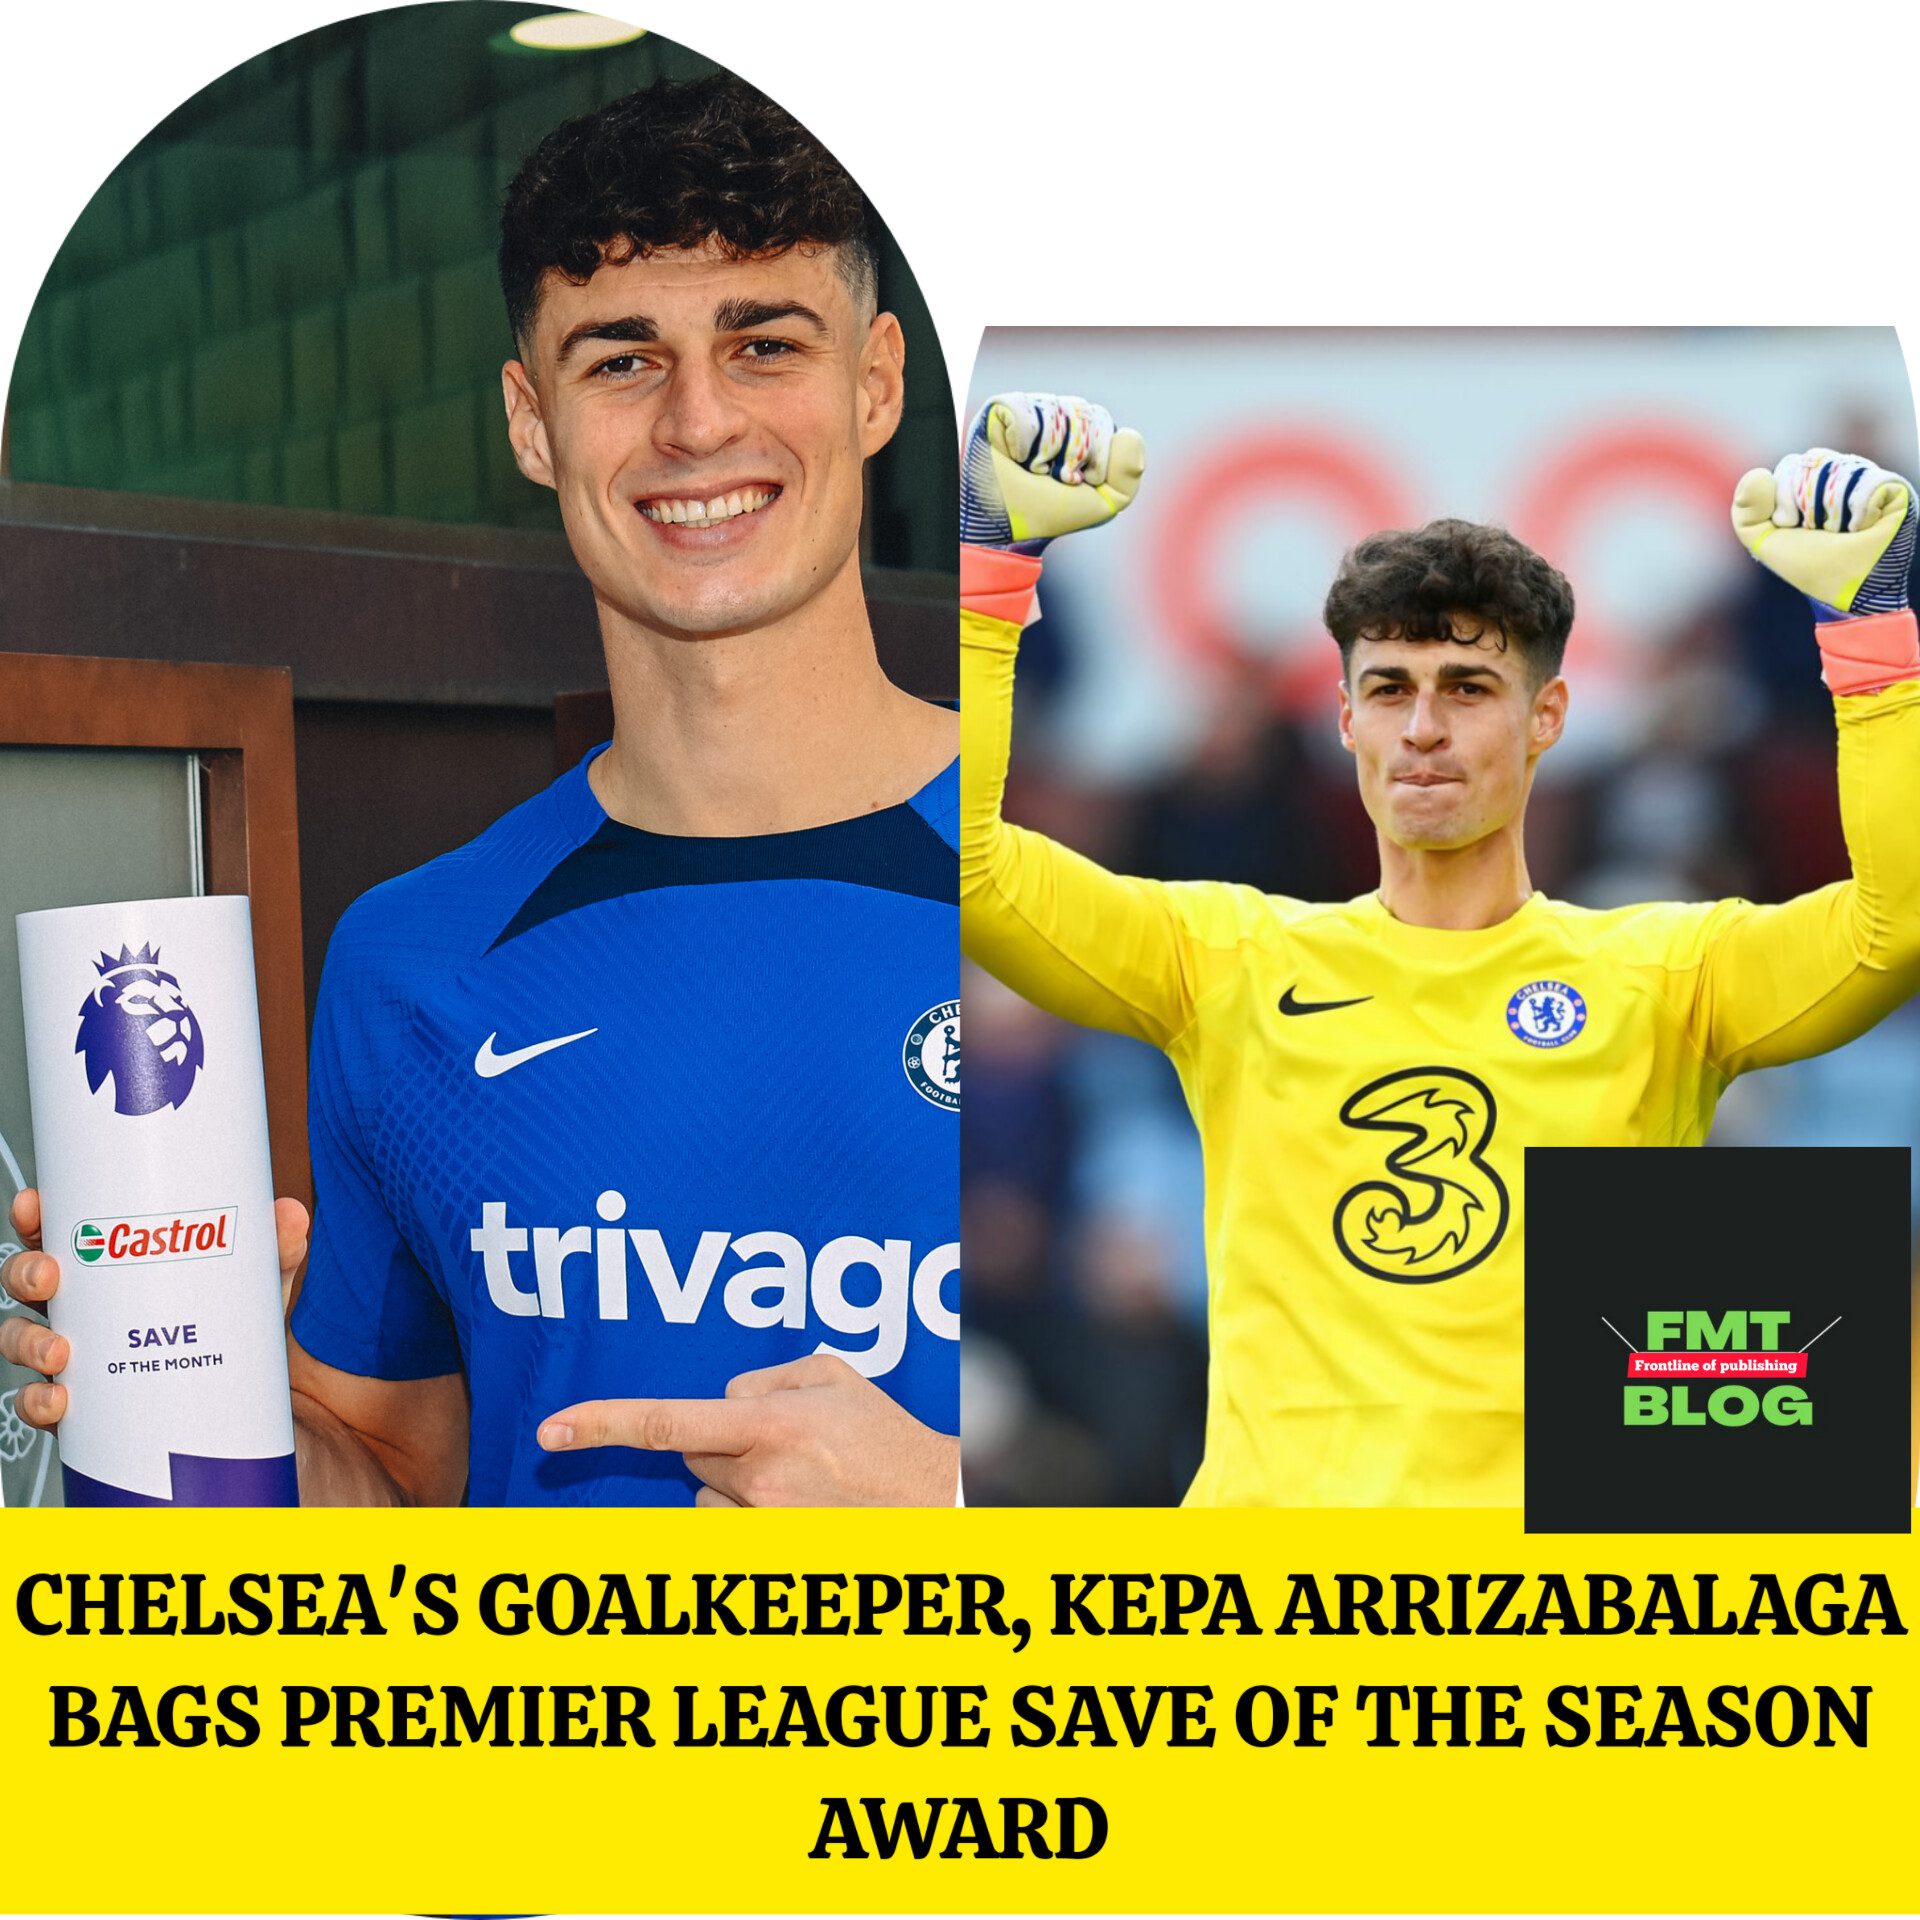 Chelsea’s Goalkeeper, Kepa Arrizabalaga bags Premier League Save of the Season Award